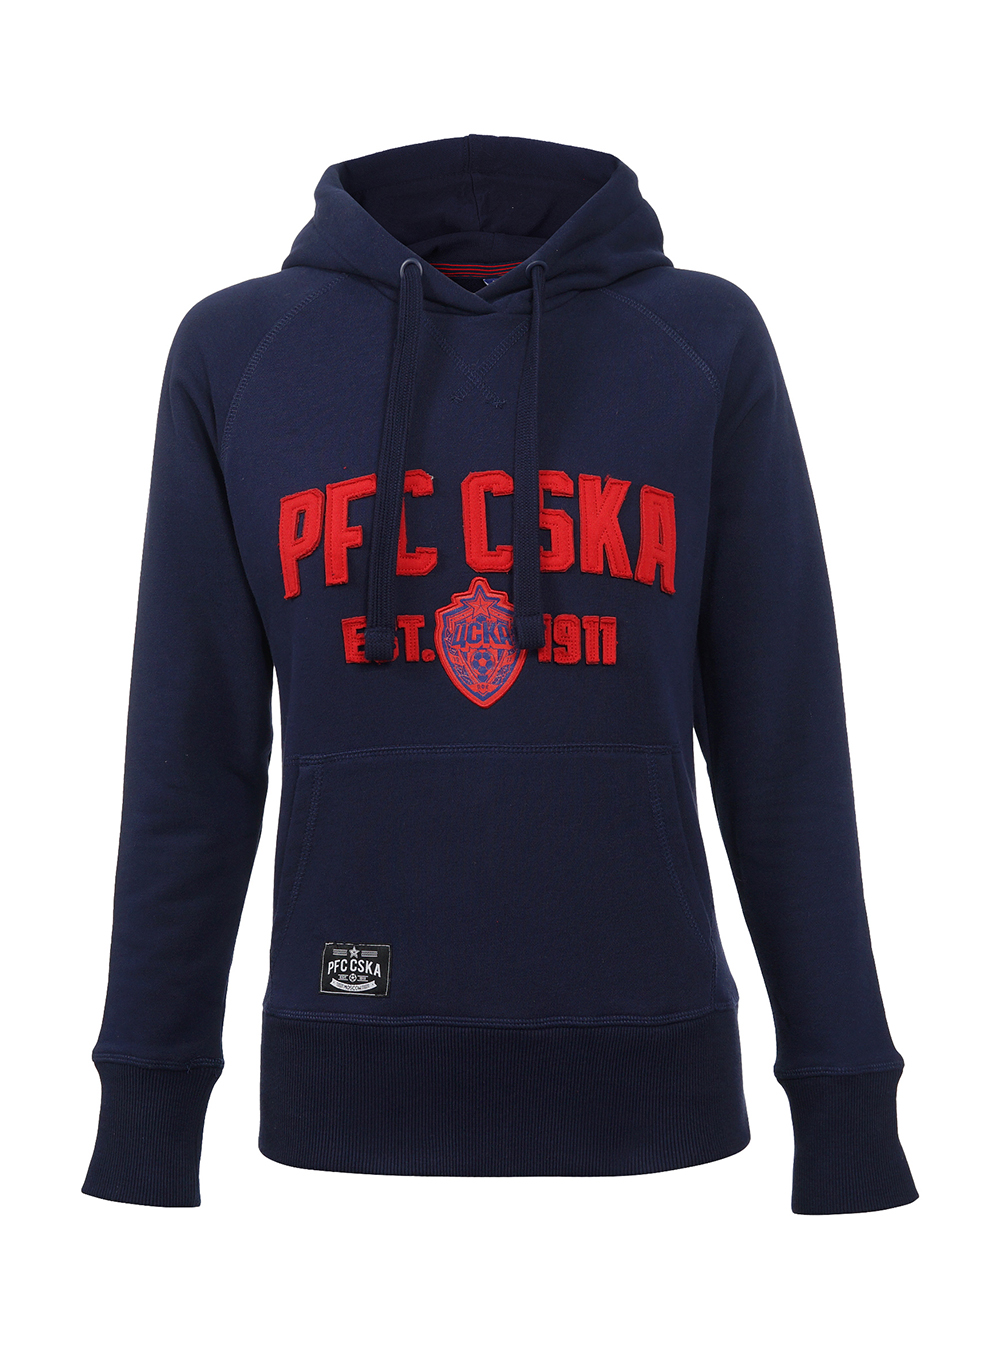 Толстовка женская "PFC CSKA est.1911", цвет синий (L) от Cskashop